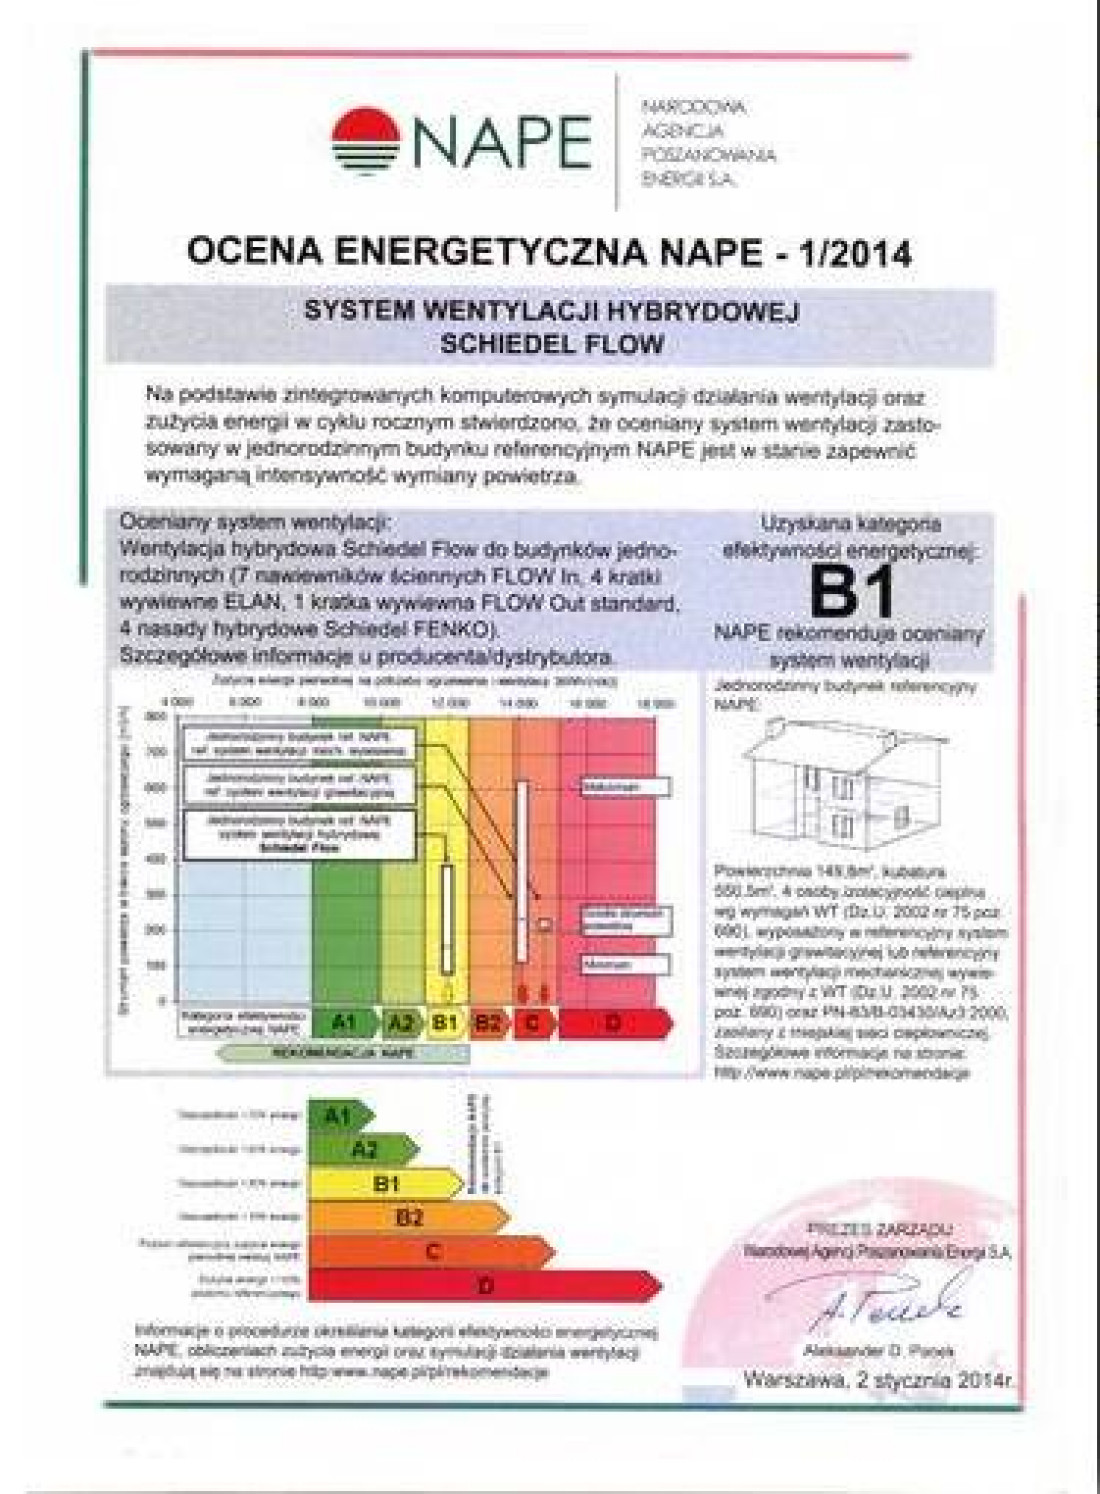 Rekomendacja Narodowej Agencji Poszanowania Energii NAPE S.A. dla Schiedel FLOW